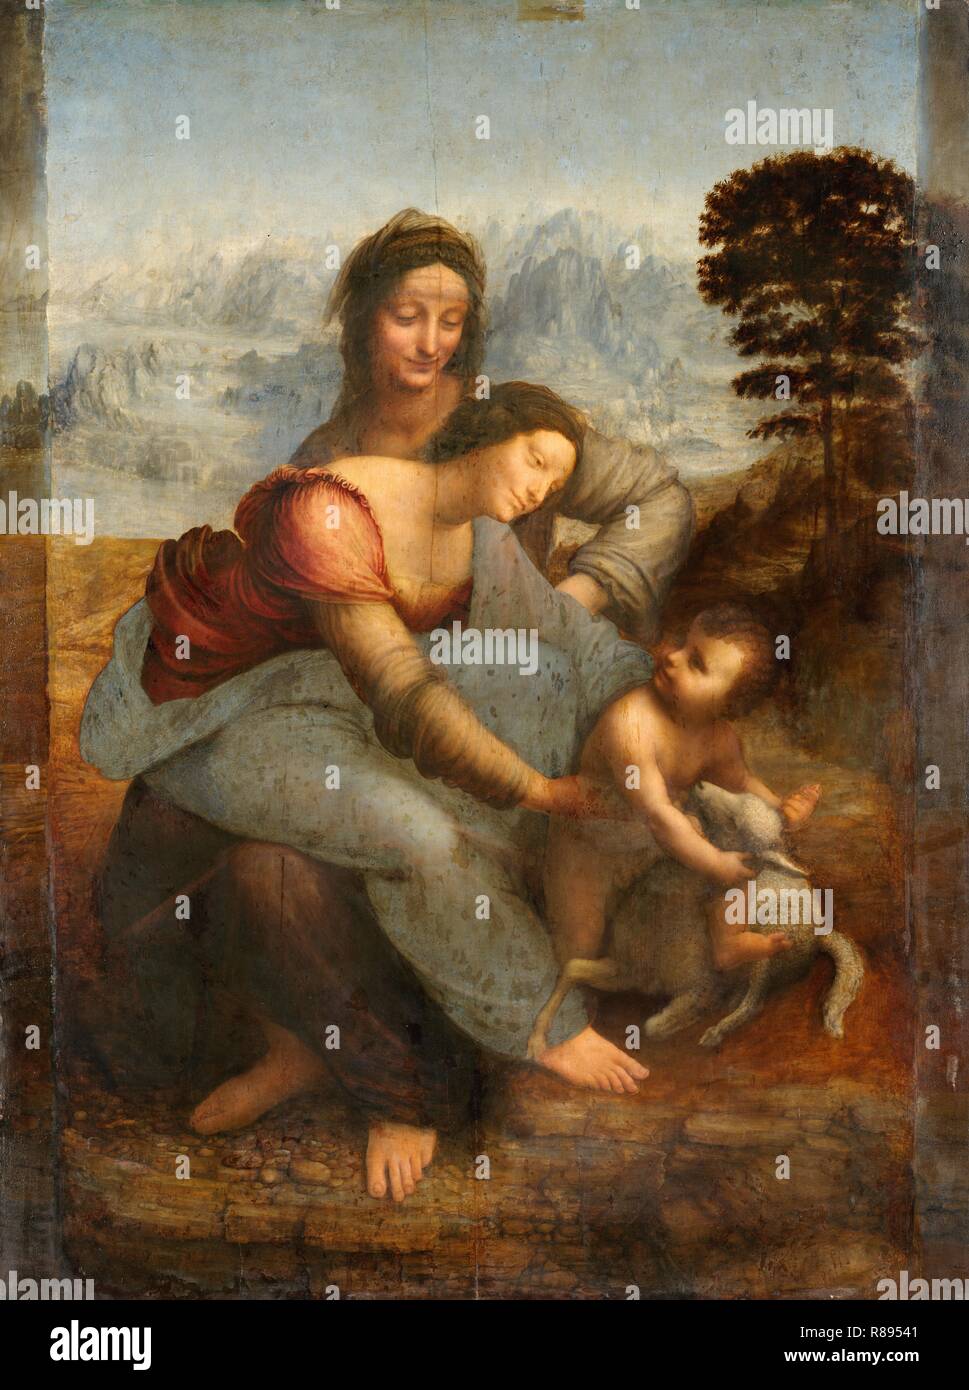 Leonardo da Vinci, The Virgin and Child with Saint Anne, before restoration. Circa 1503-1519. Museum: Louvre, Dpt. des Peintures. Stock Photo